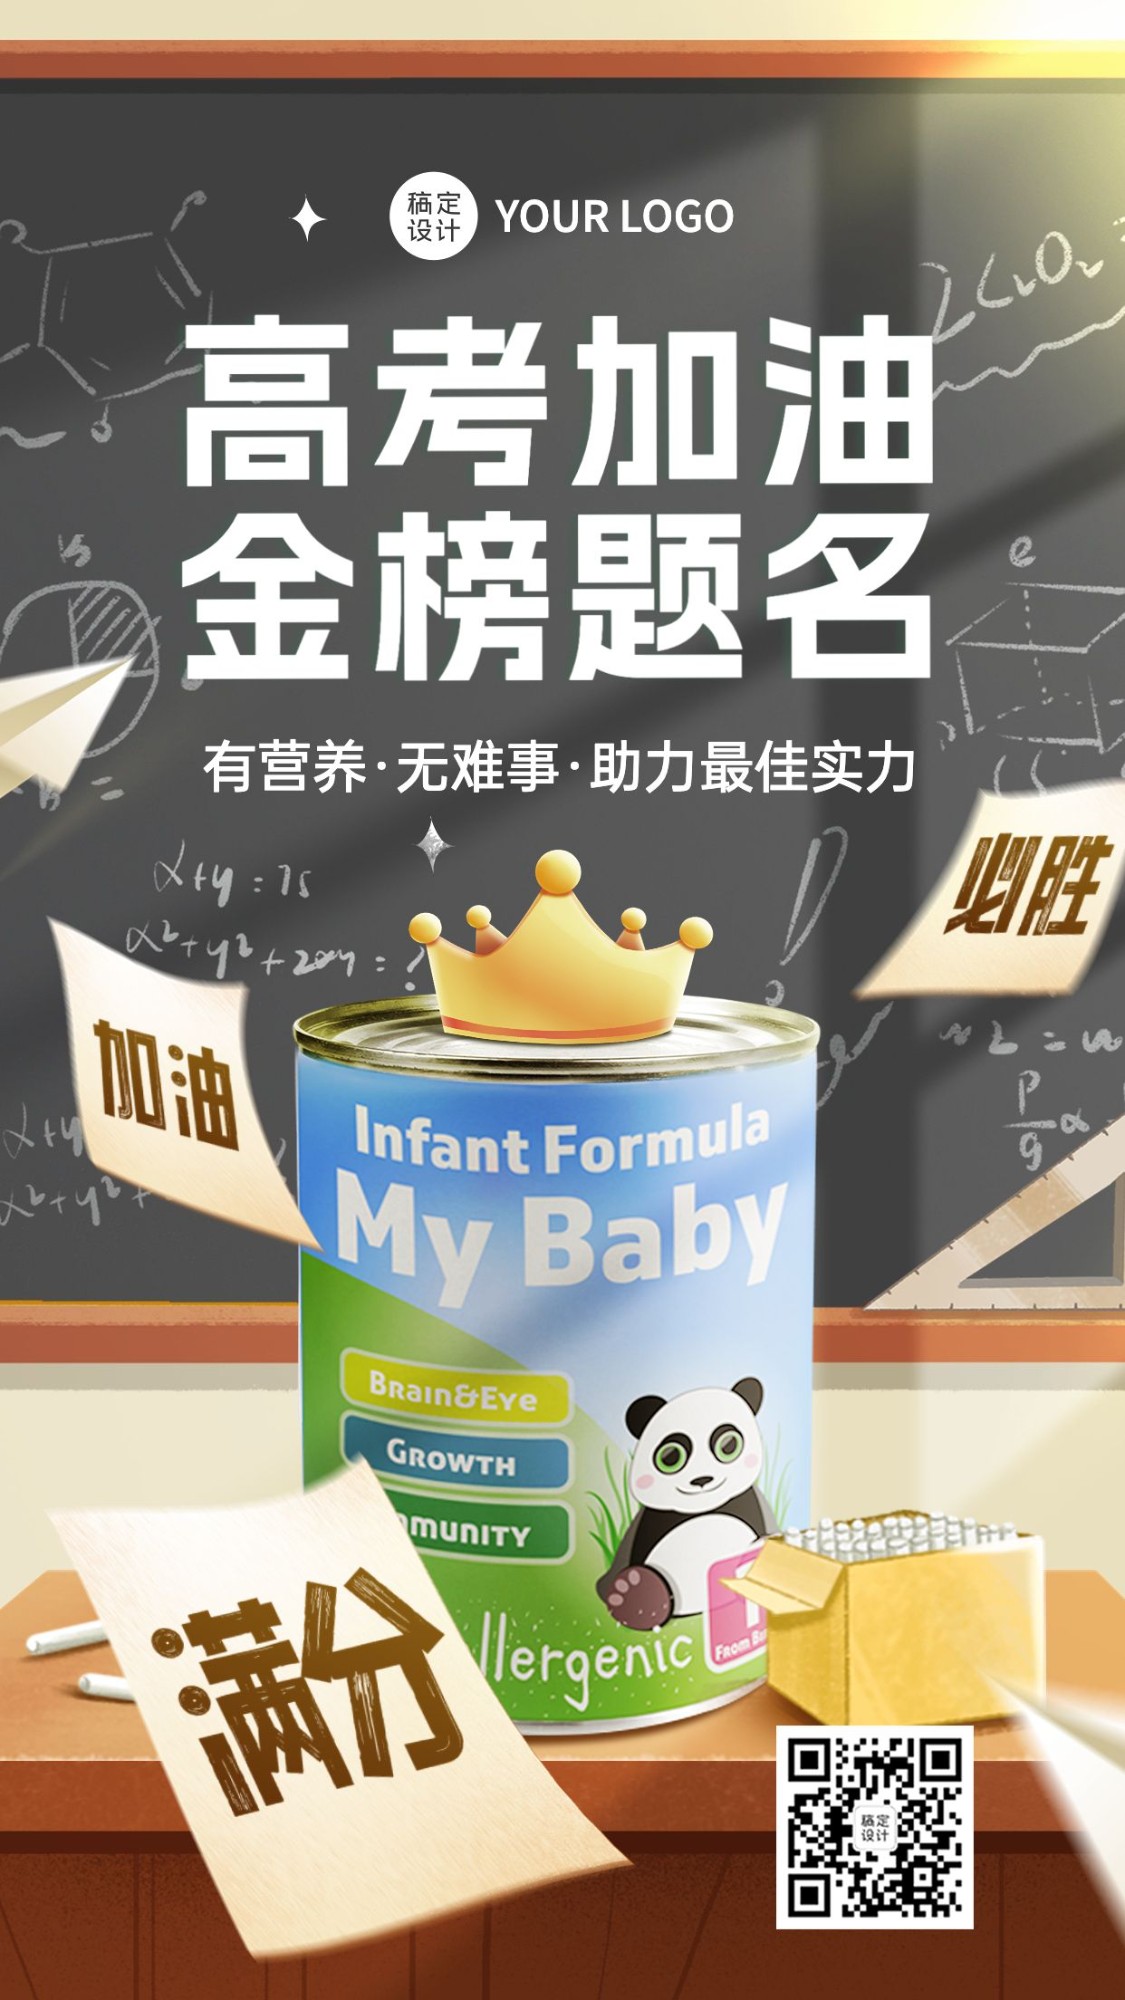 母婴用品奶粉高考祝福手机海报预览效果